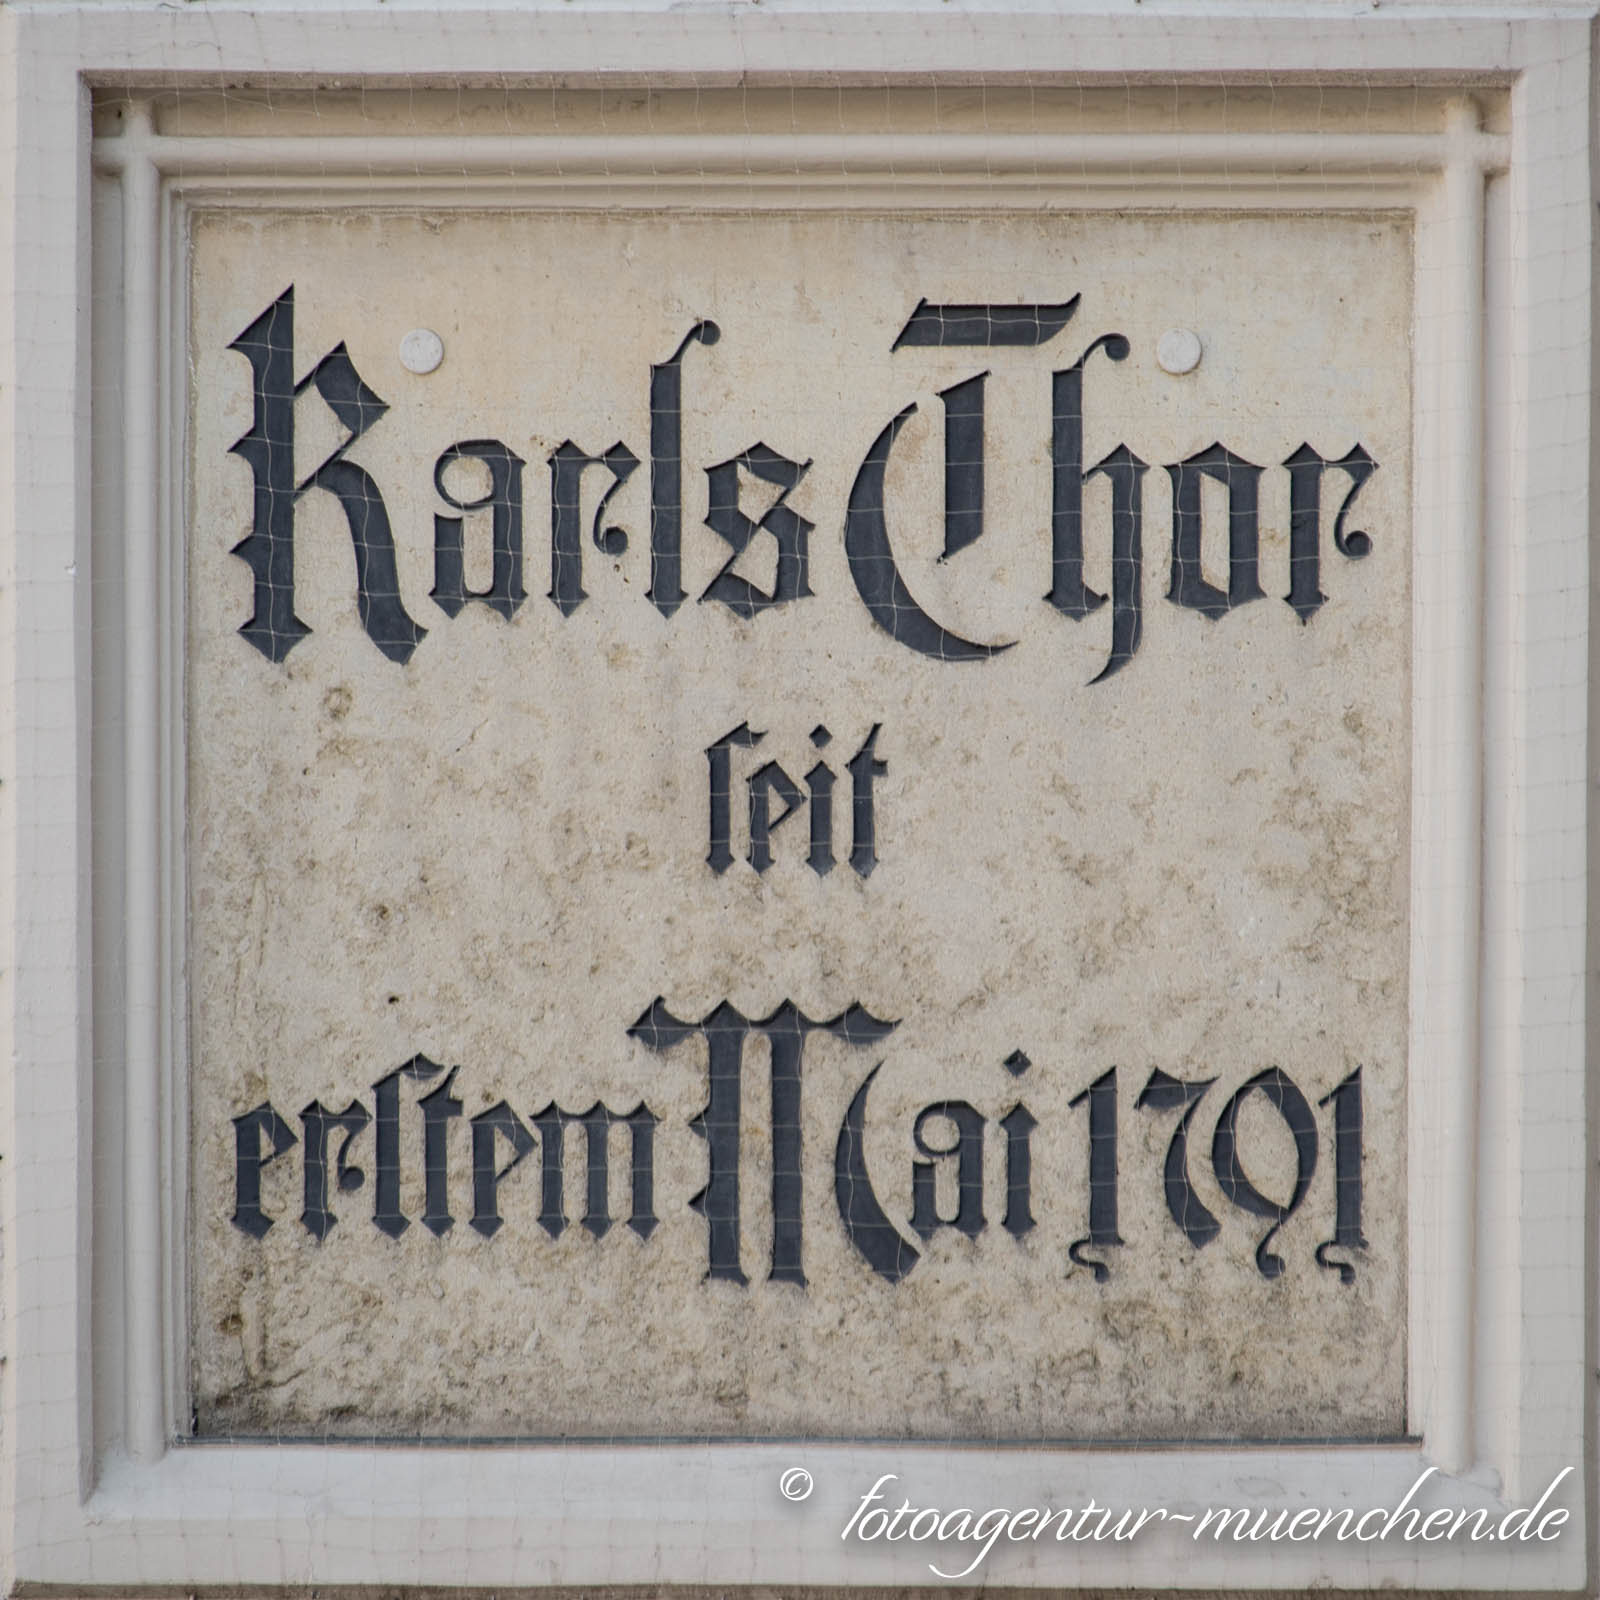 Karls-Thor